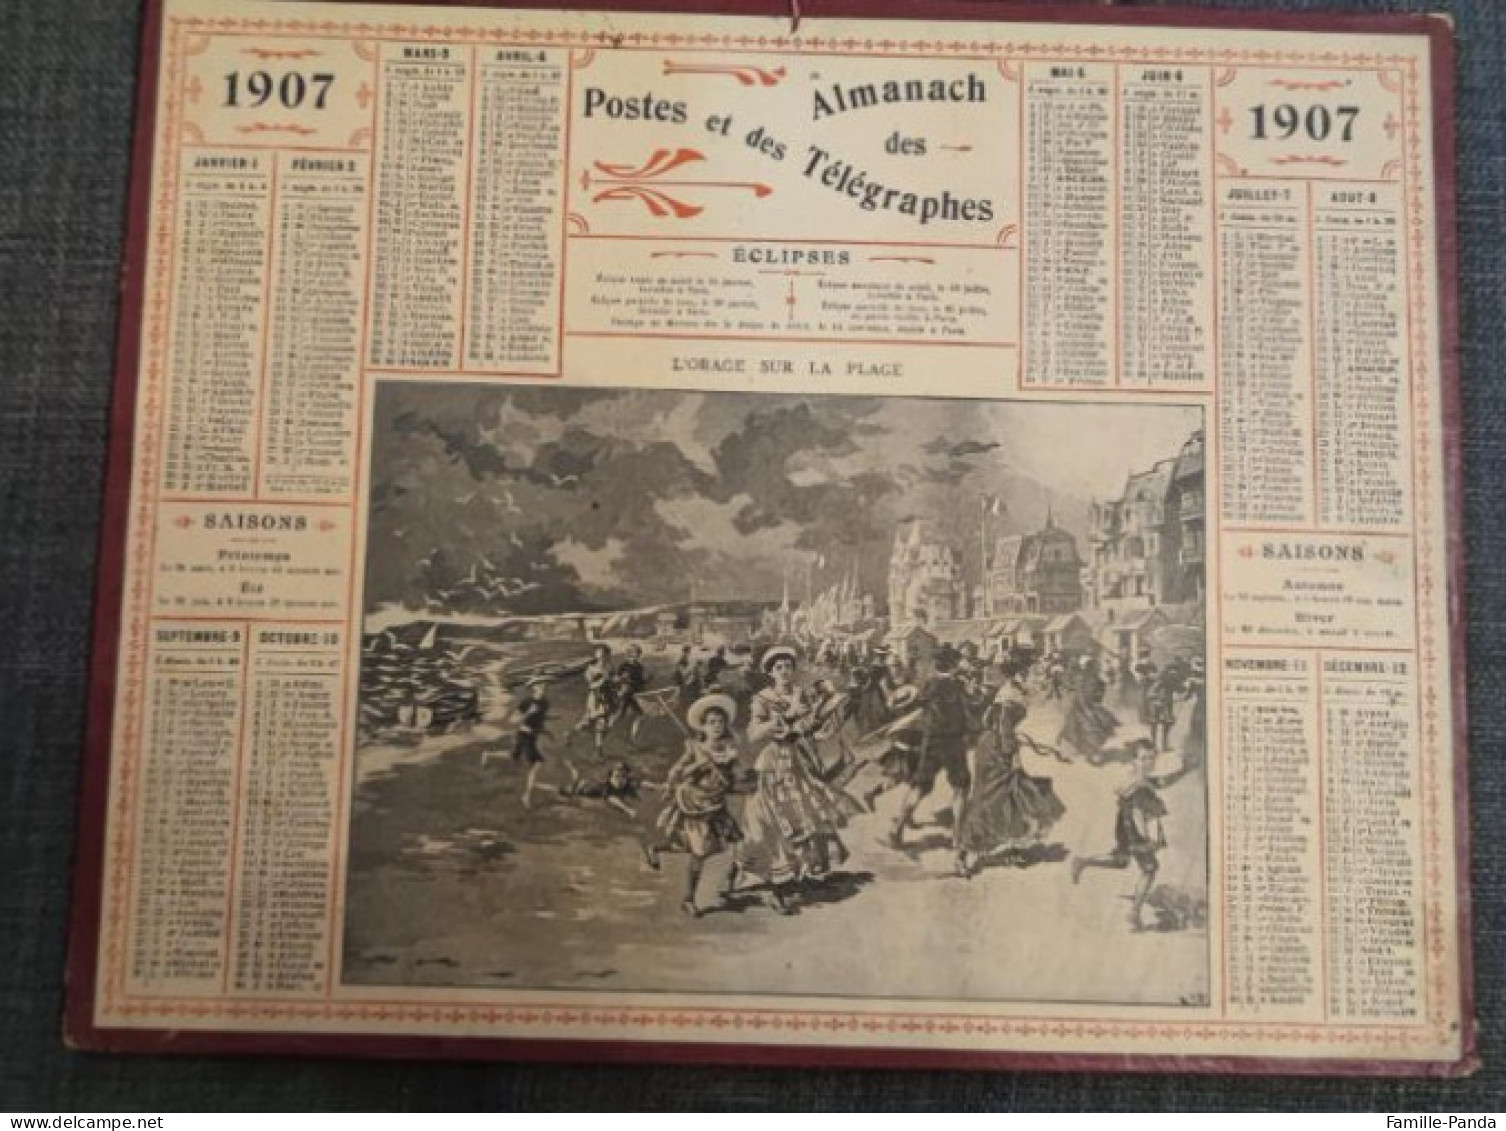 Calendrier PTT ALMANACH 1907 Des Postes Et Télégraphes 45 Loiret - L'orage Sur La Plage - Oberthur - Big : 1901-20